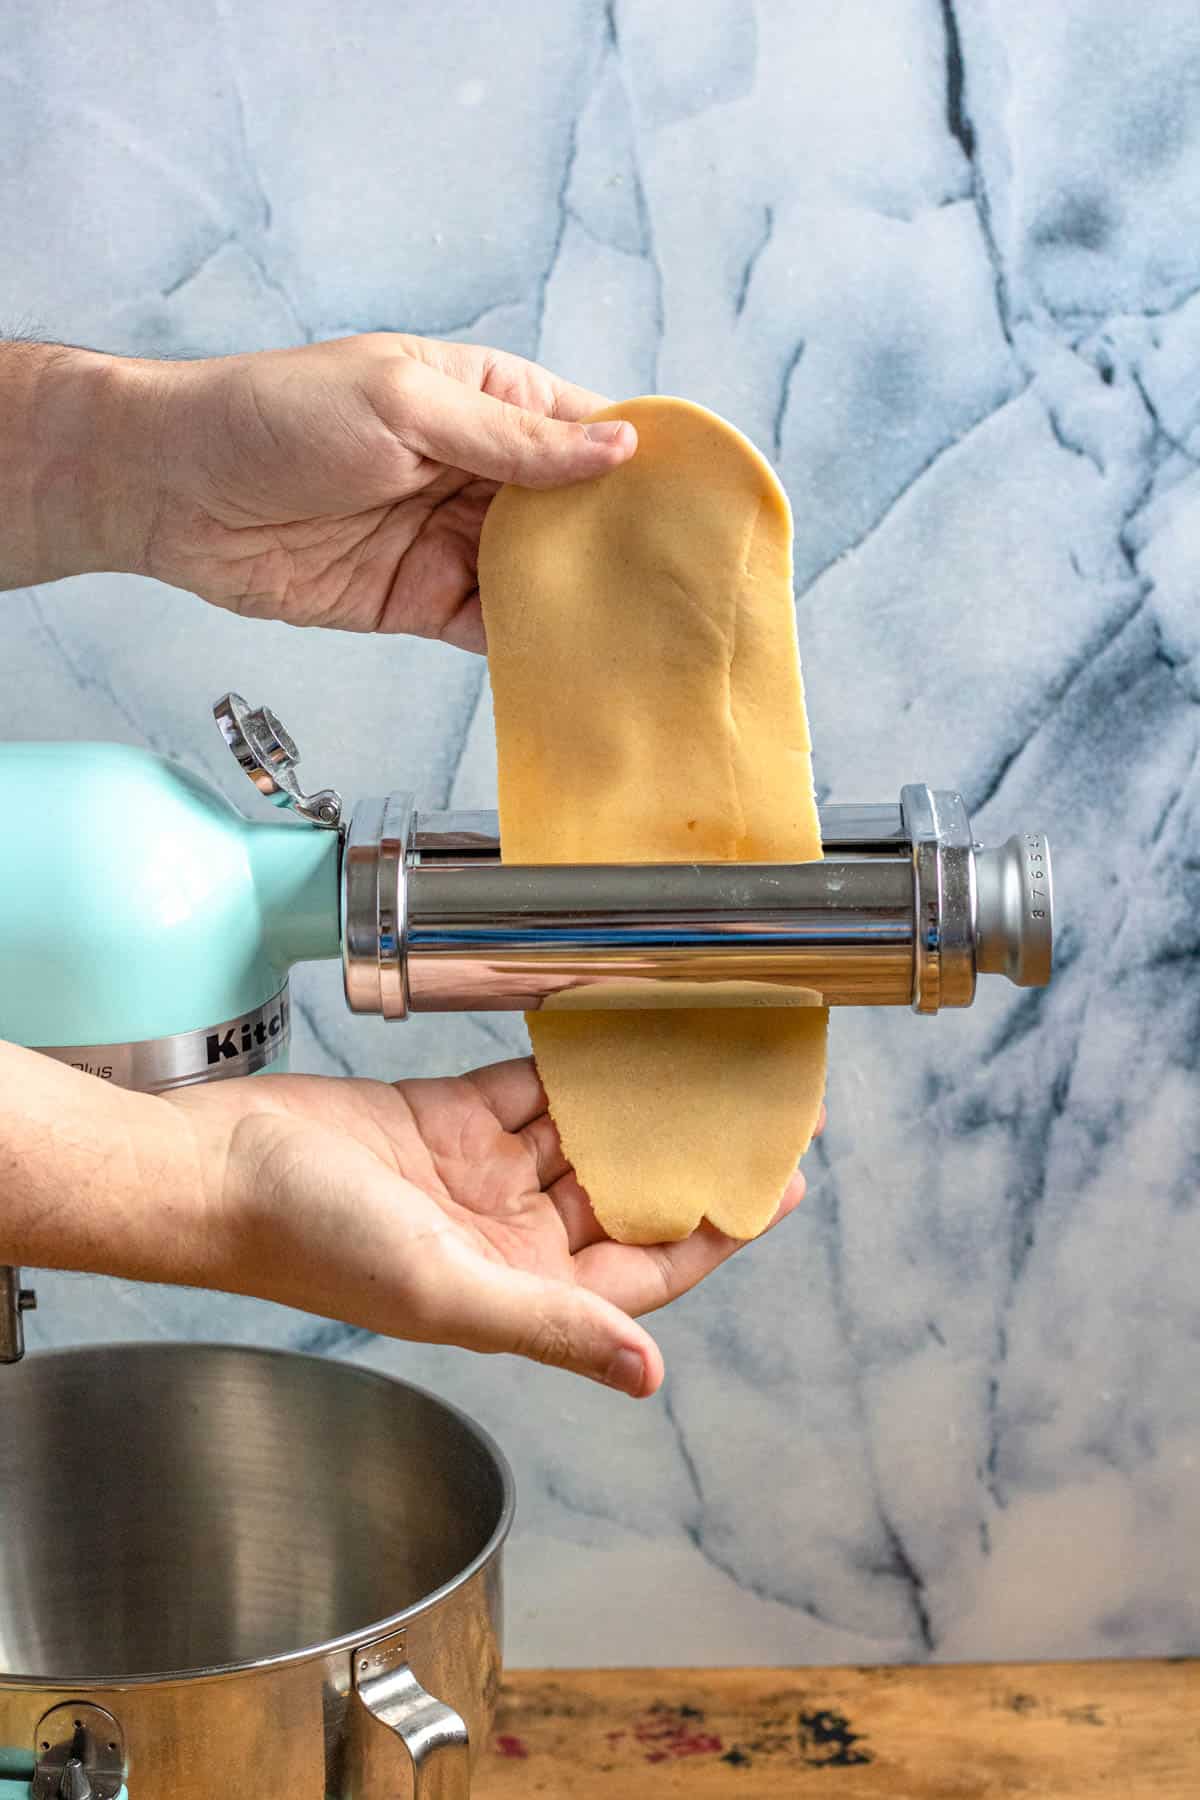 Hand running pasta dough through pasta machine to make ravioli pasta. 